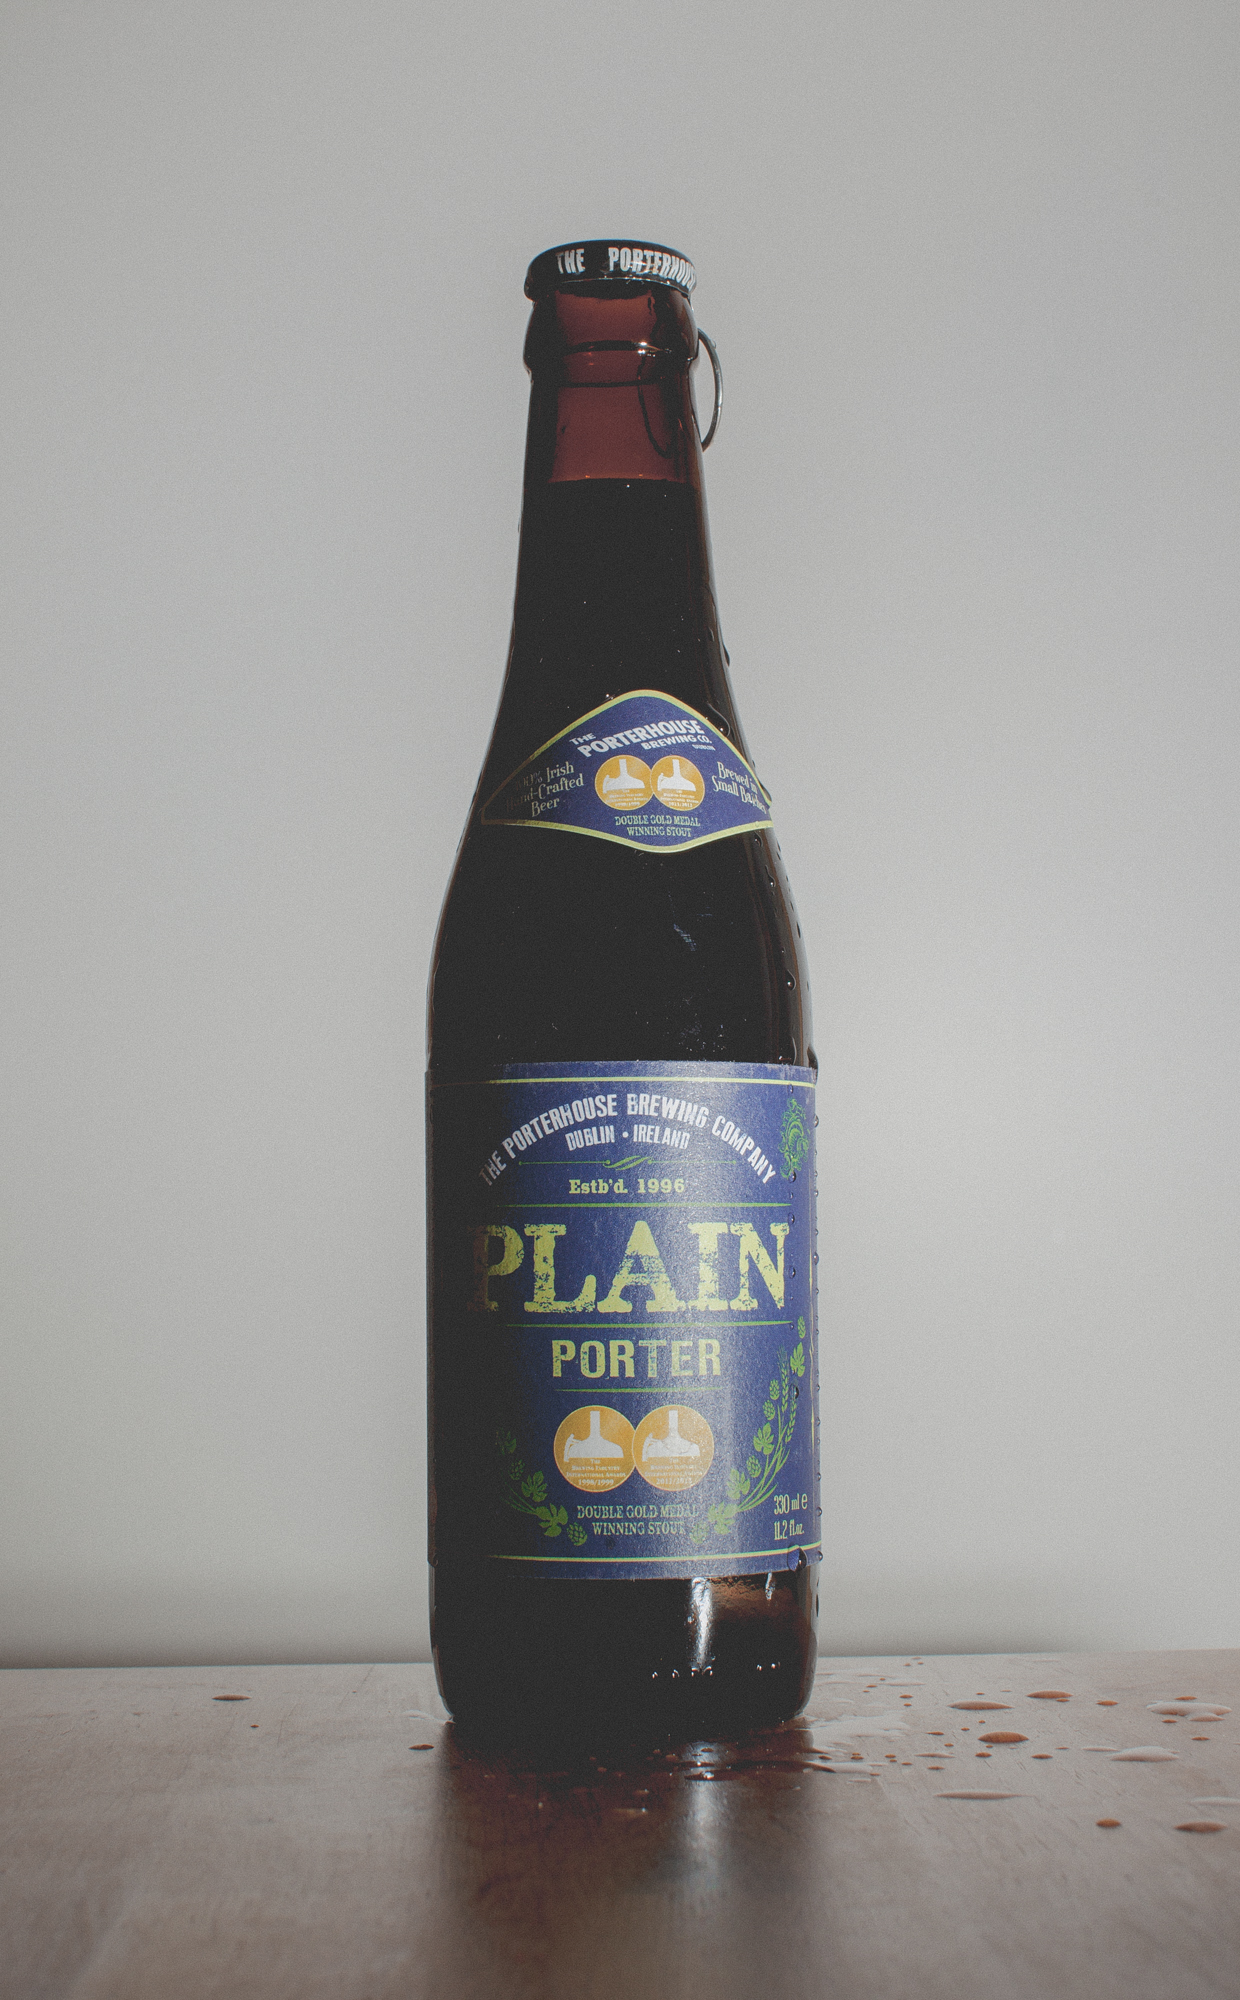 Plain Porter